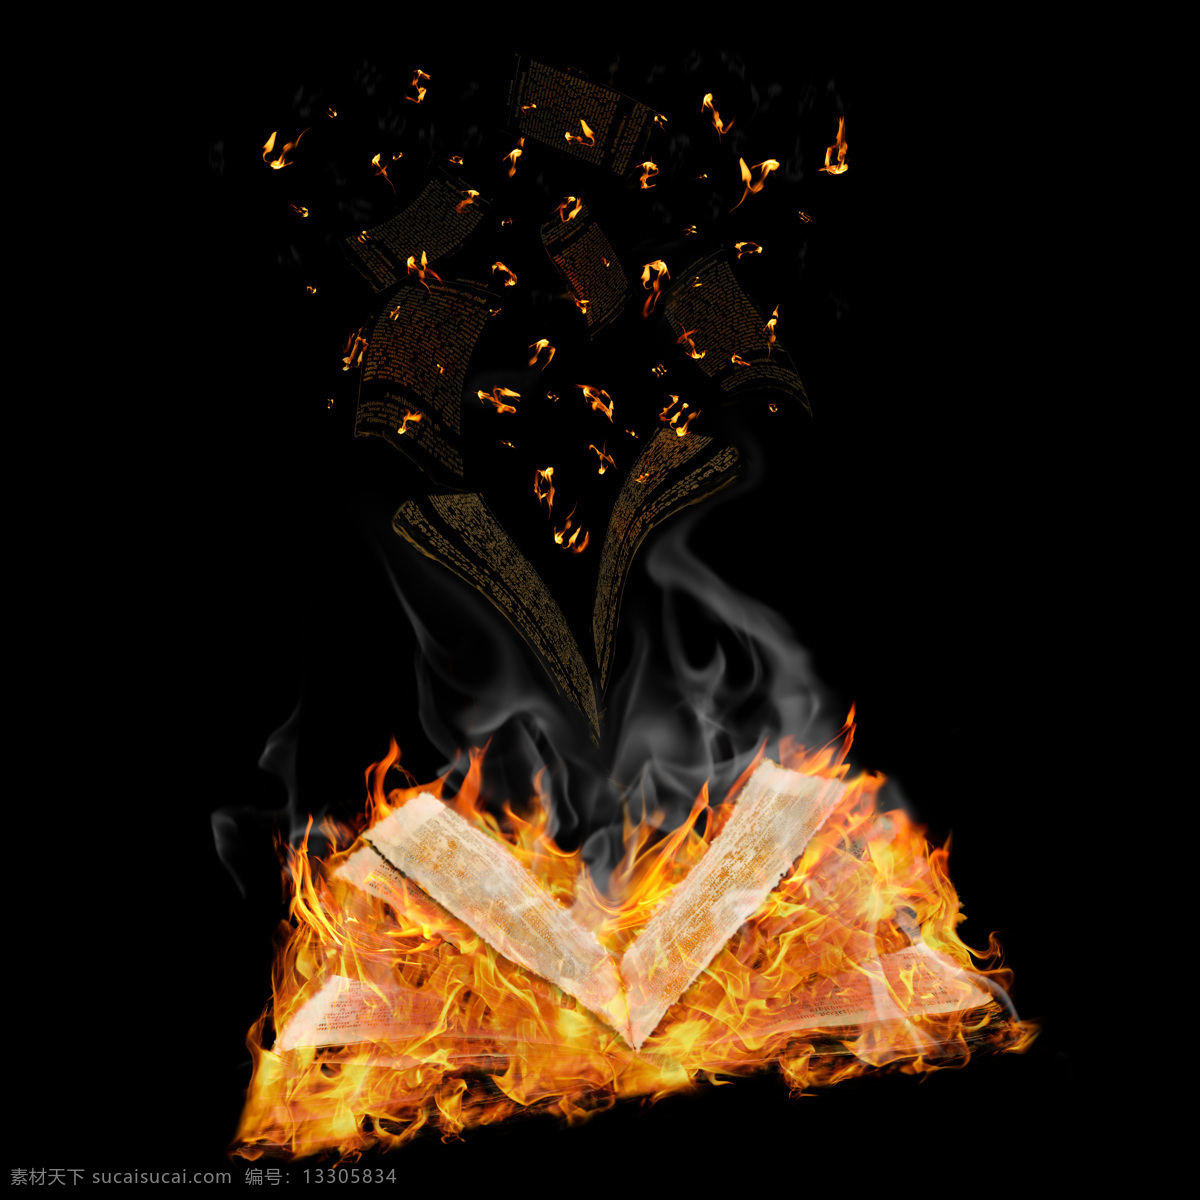 纸张 火焰 纸 书本 火势 火苗 火焰图片 生活百科